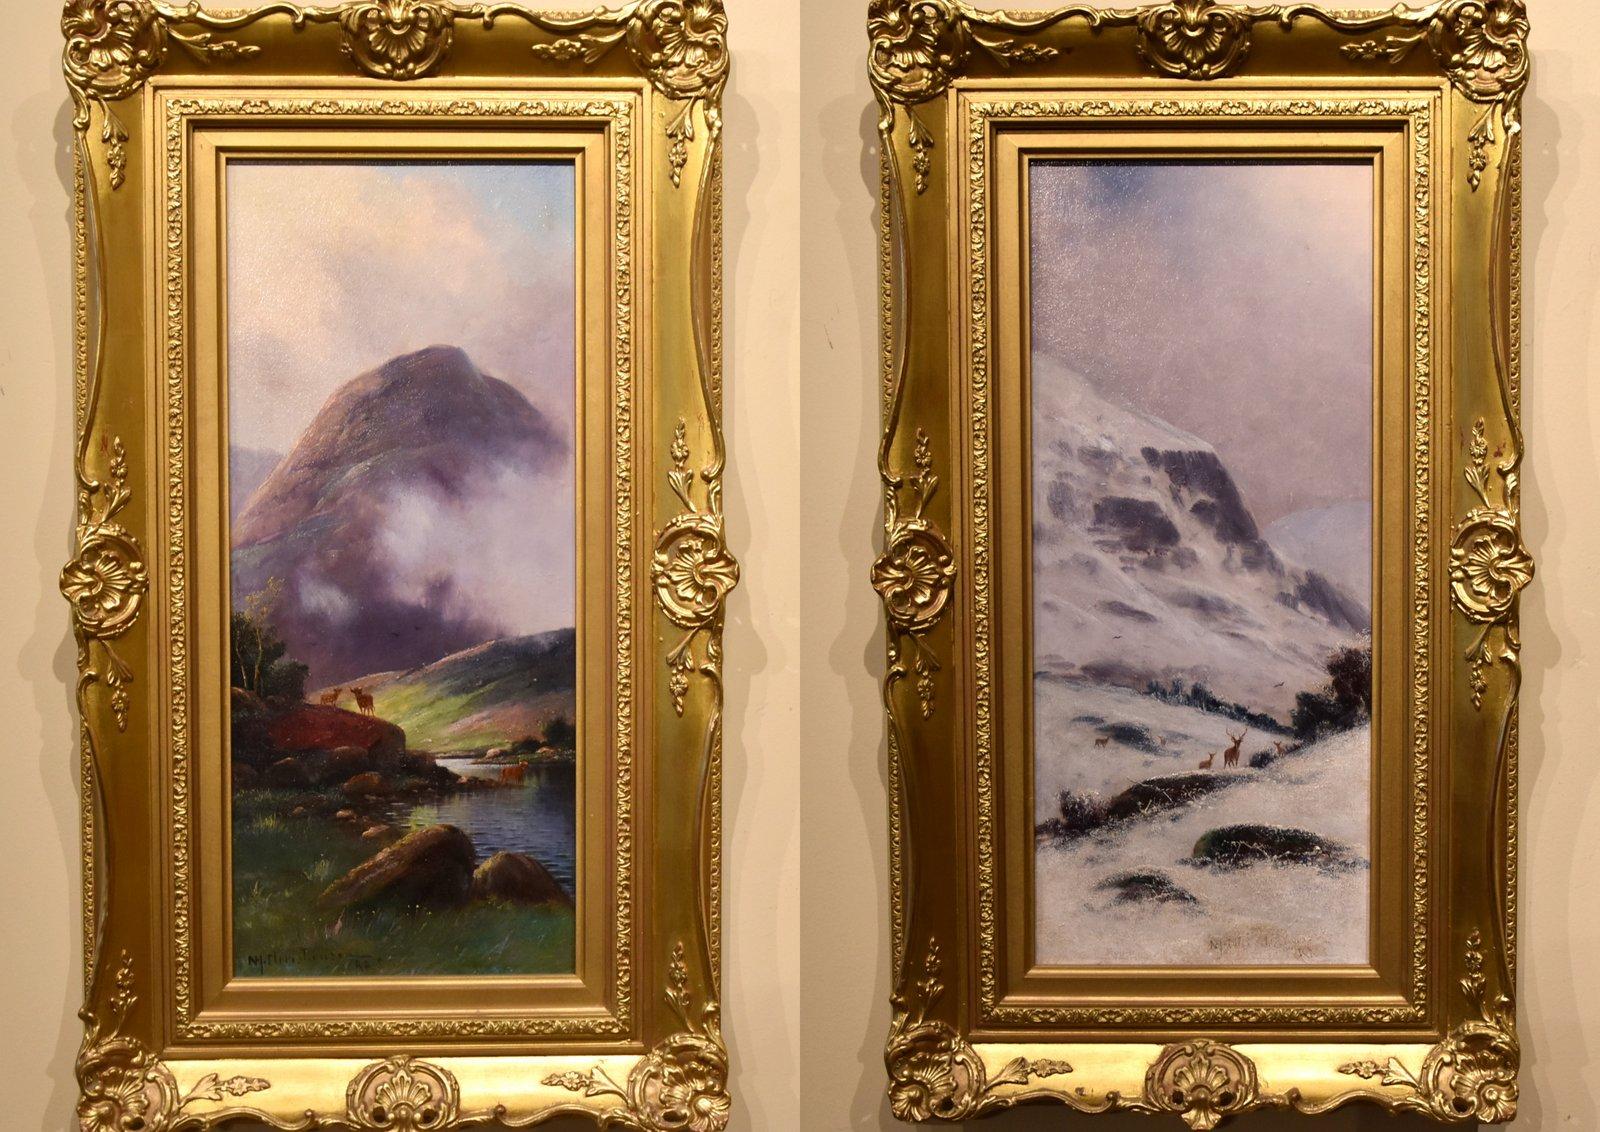 L'été dans les Highlands avec le bétail et l'hiver dans les Highlands avec les cerfs.  Paire de Nils Hans Christiansen RAC 1850-22 Peintre danois de scènes norvégiennes colorées.  Les deux huiles sur panneau 18x8" signées.

largeur 14.25"